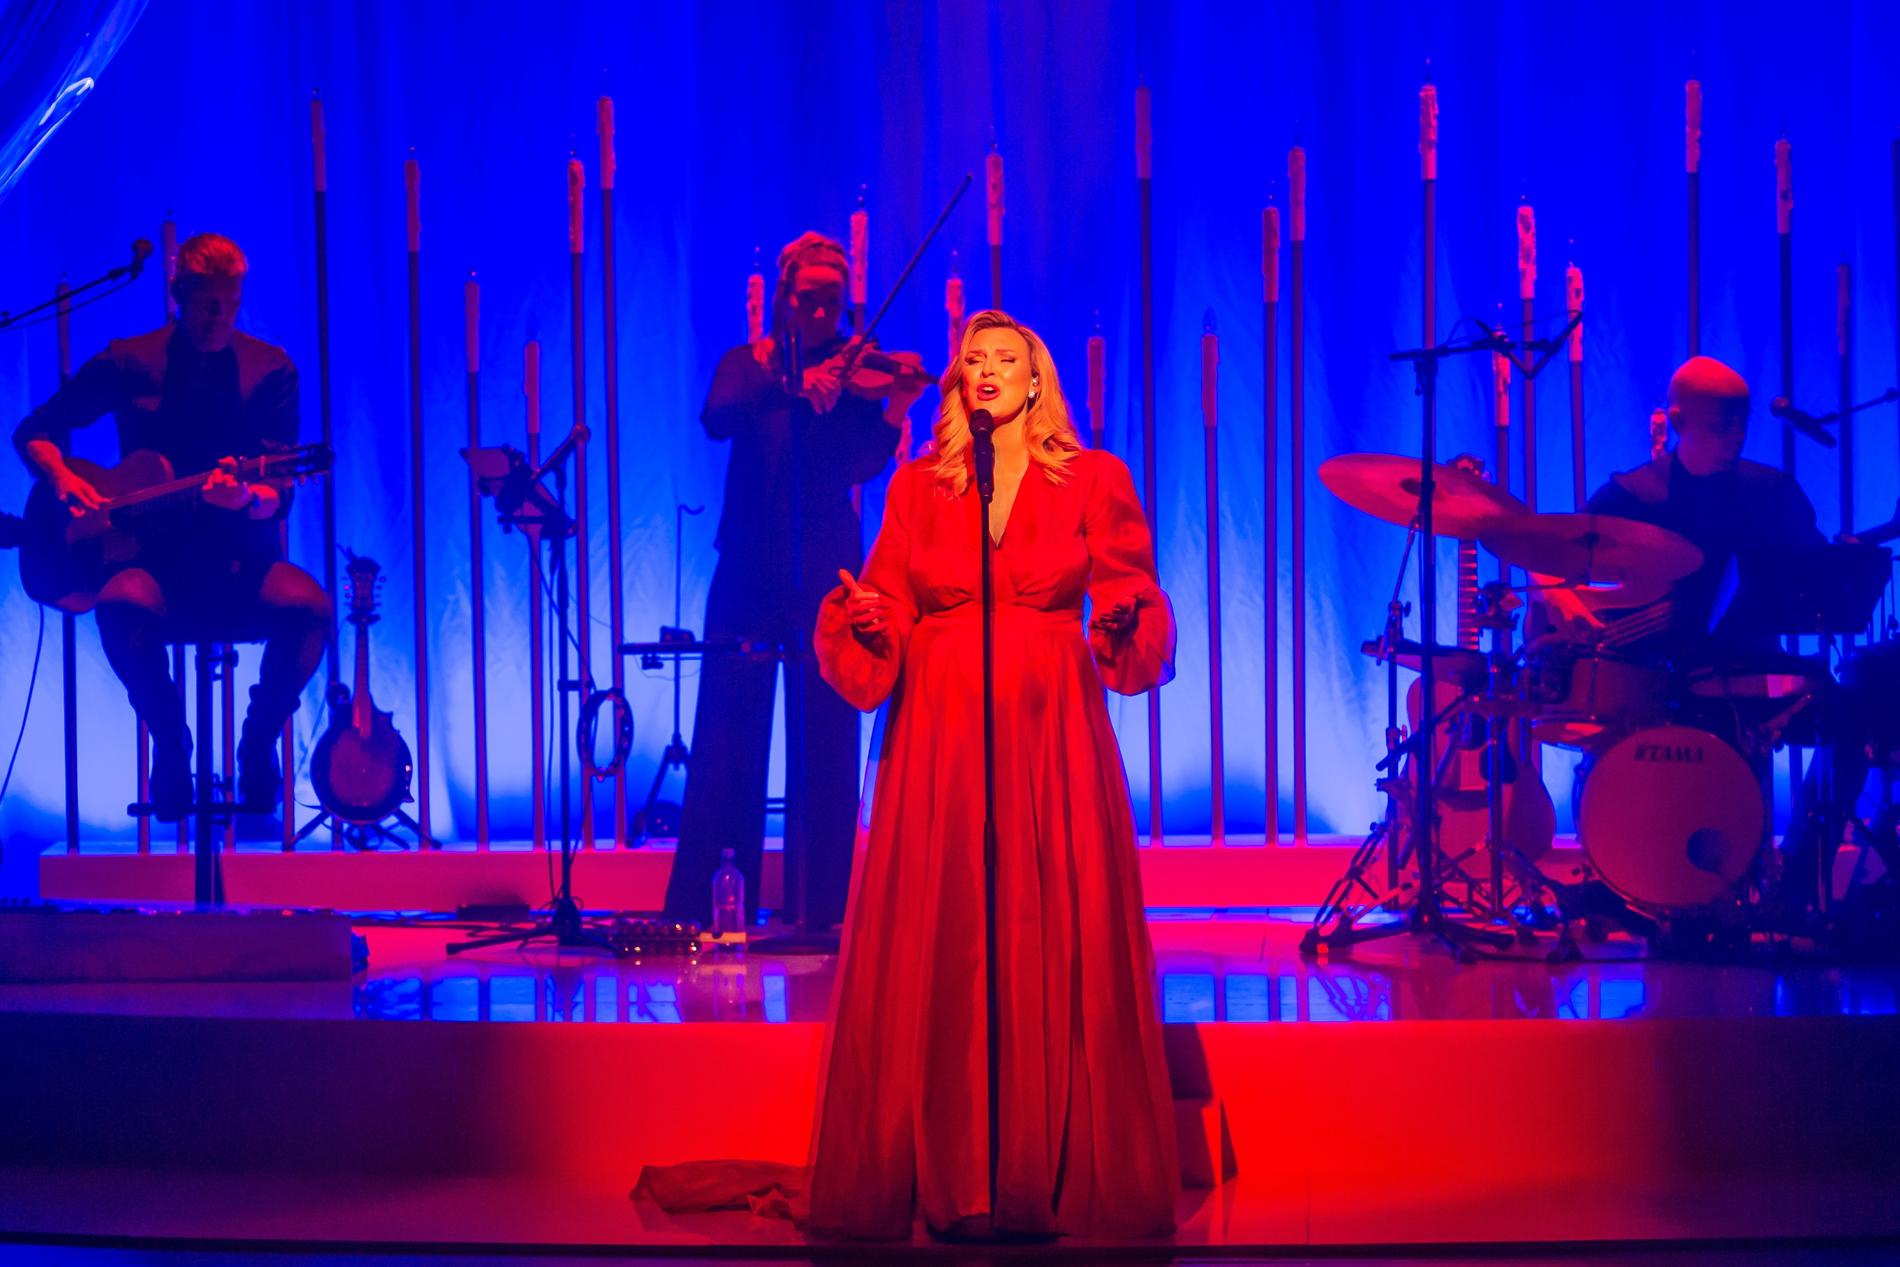 Sanna Nielsen firar 25 år som artist med julkonserten ”Min sanna jul”. Turnén når 20 svenska städer. 